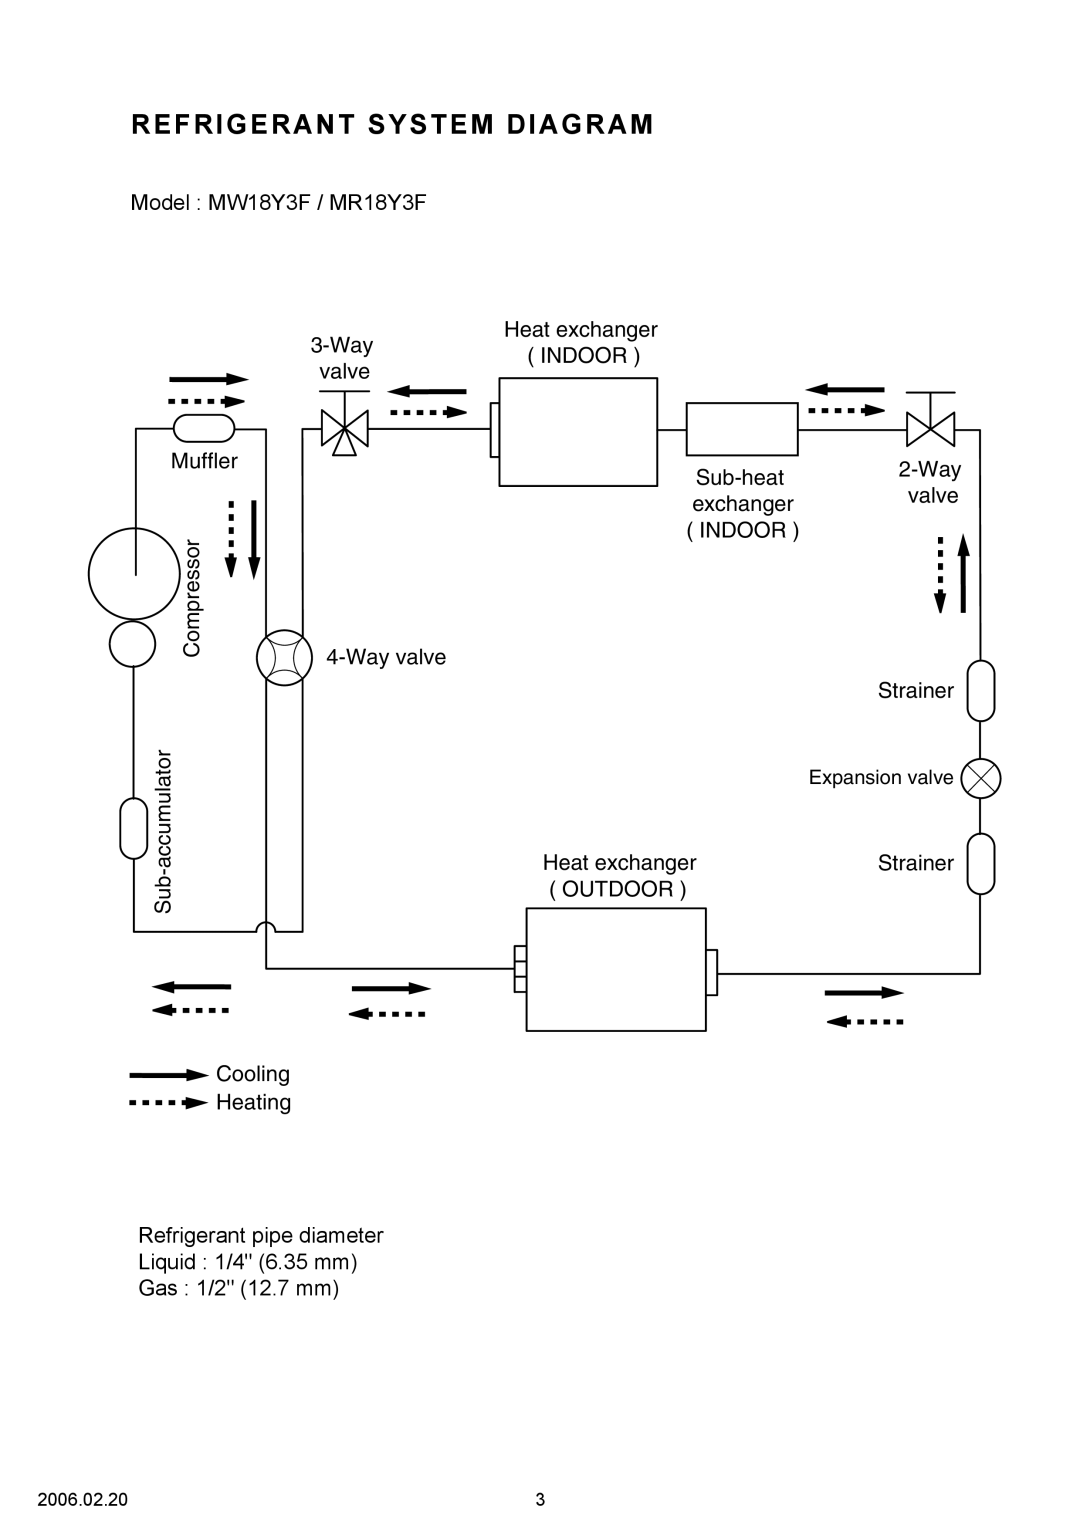 Friedrich specifications Refrigerant System Diagram, Model MW18Y3F / MR18Y3F 